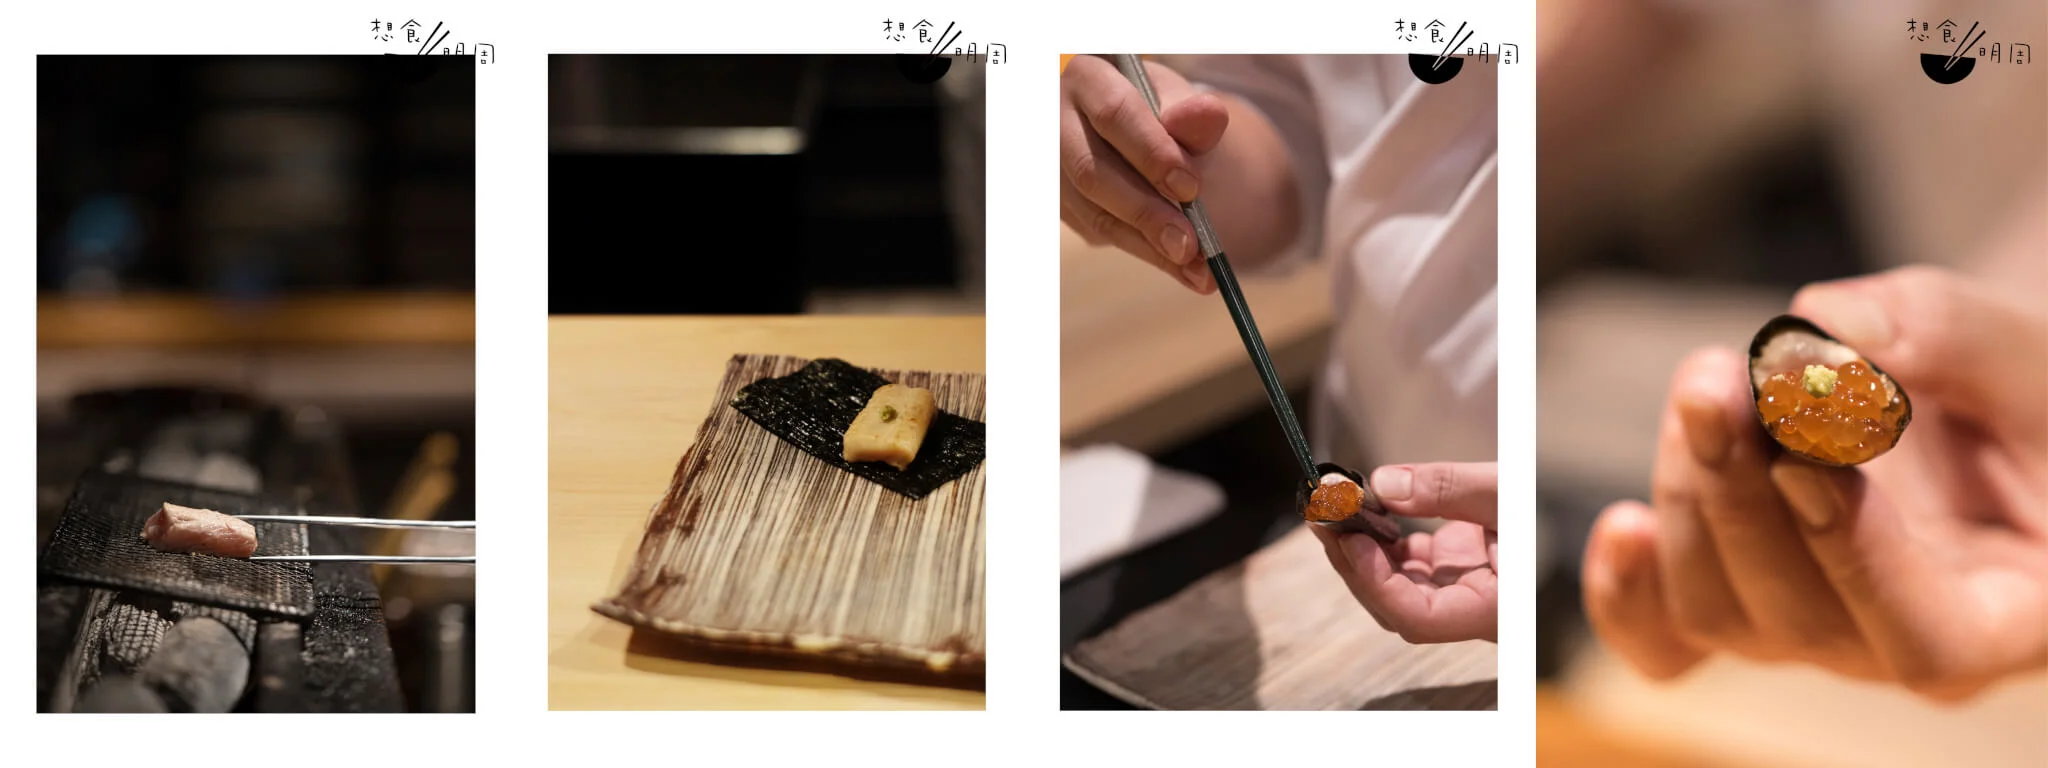 微熟的雞柳件夾在紫菜中，配魚子送上客人手內，頗有Sushi Omakase時接收手卷之感，也是近年流行的吧枱互動。